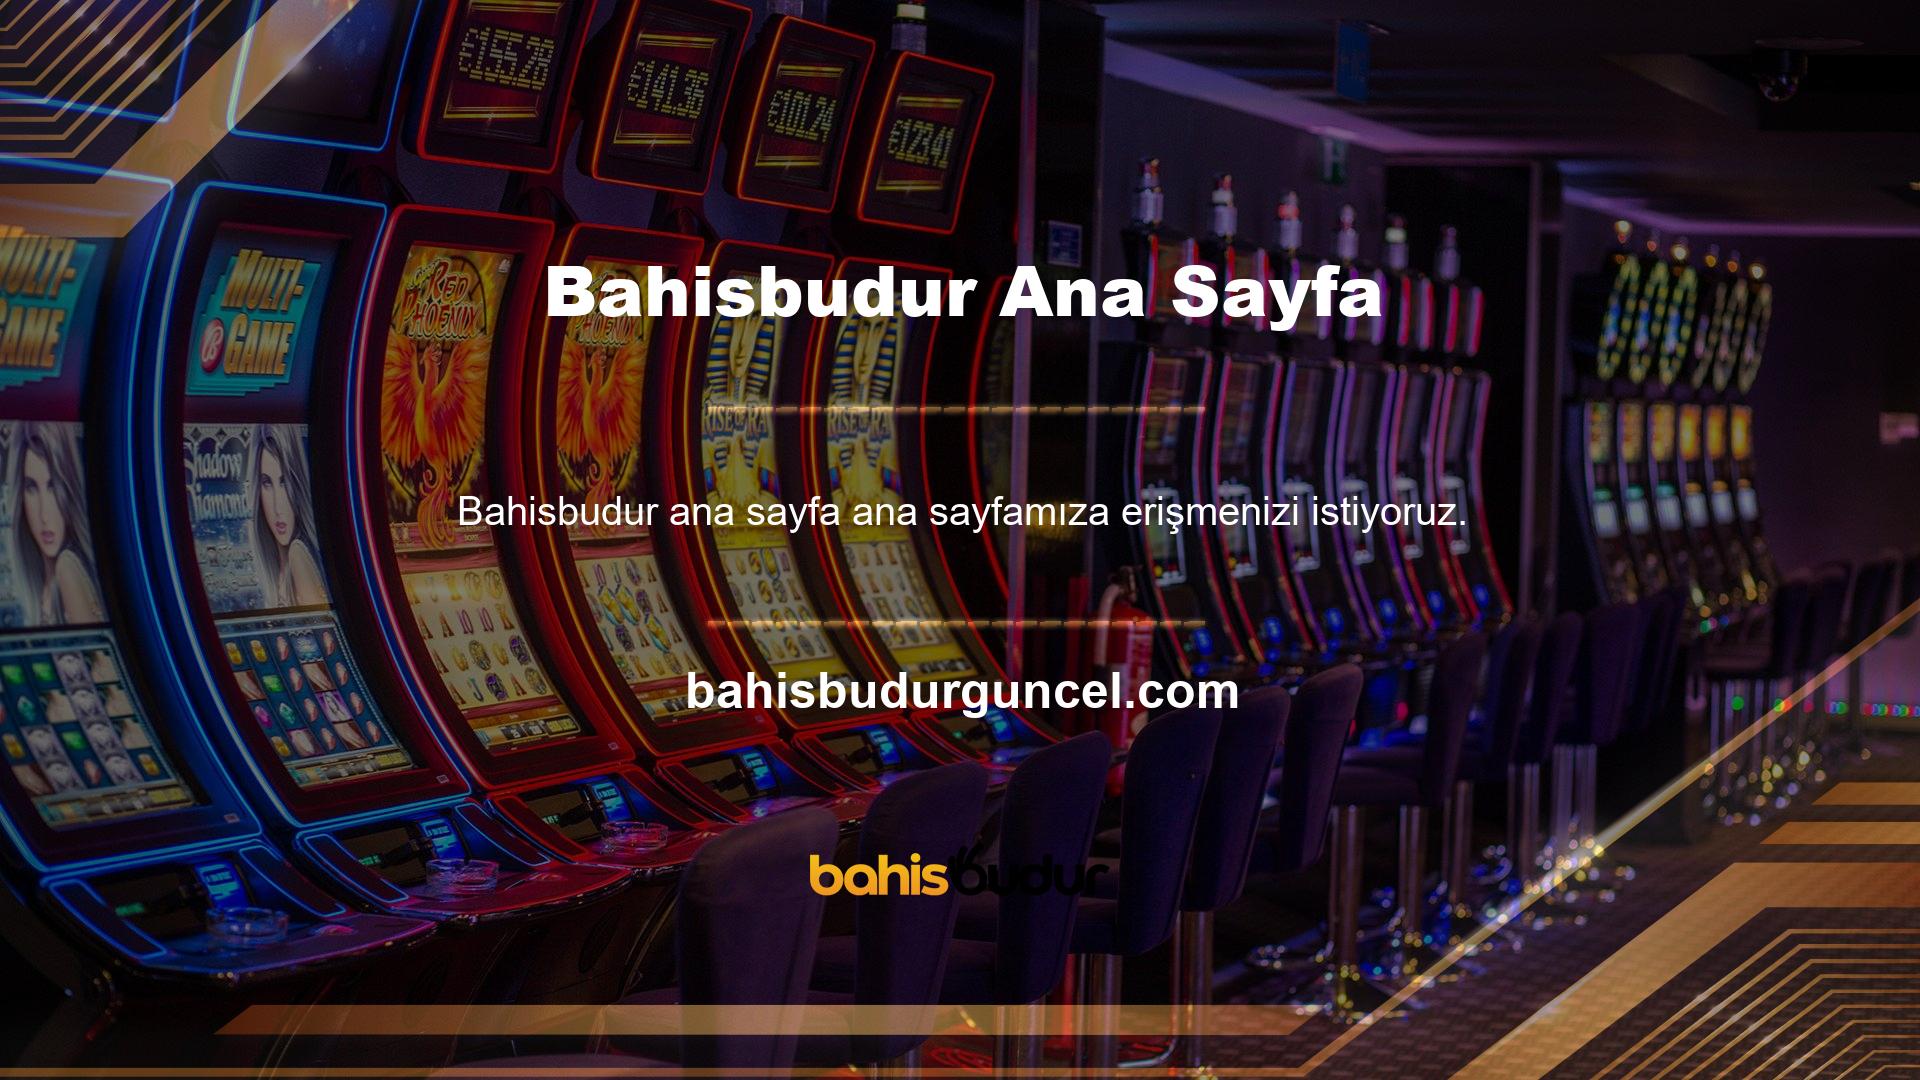 Ana sayfaya giriş yaptıktan sonra sol menü, sağ menü ve üst menüden Bahisbudur TV Yöntemine ulaşabilirsiniz